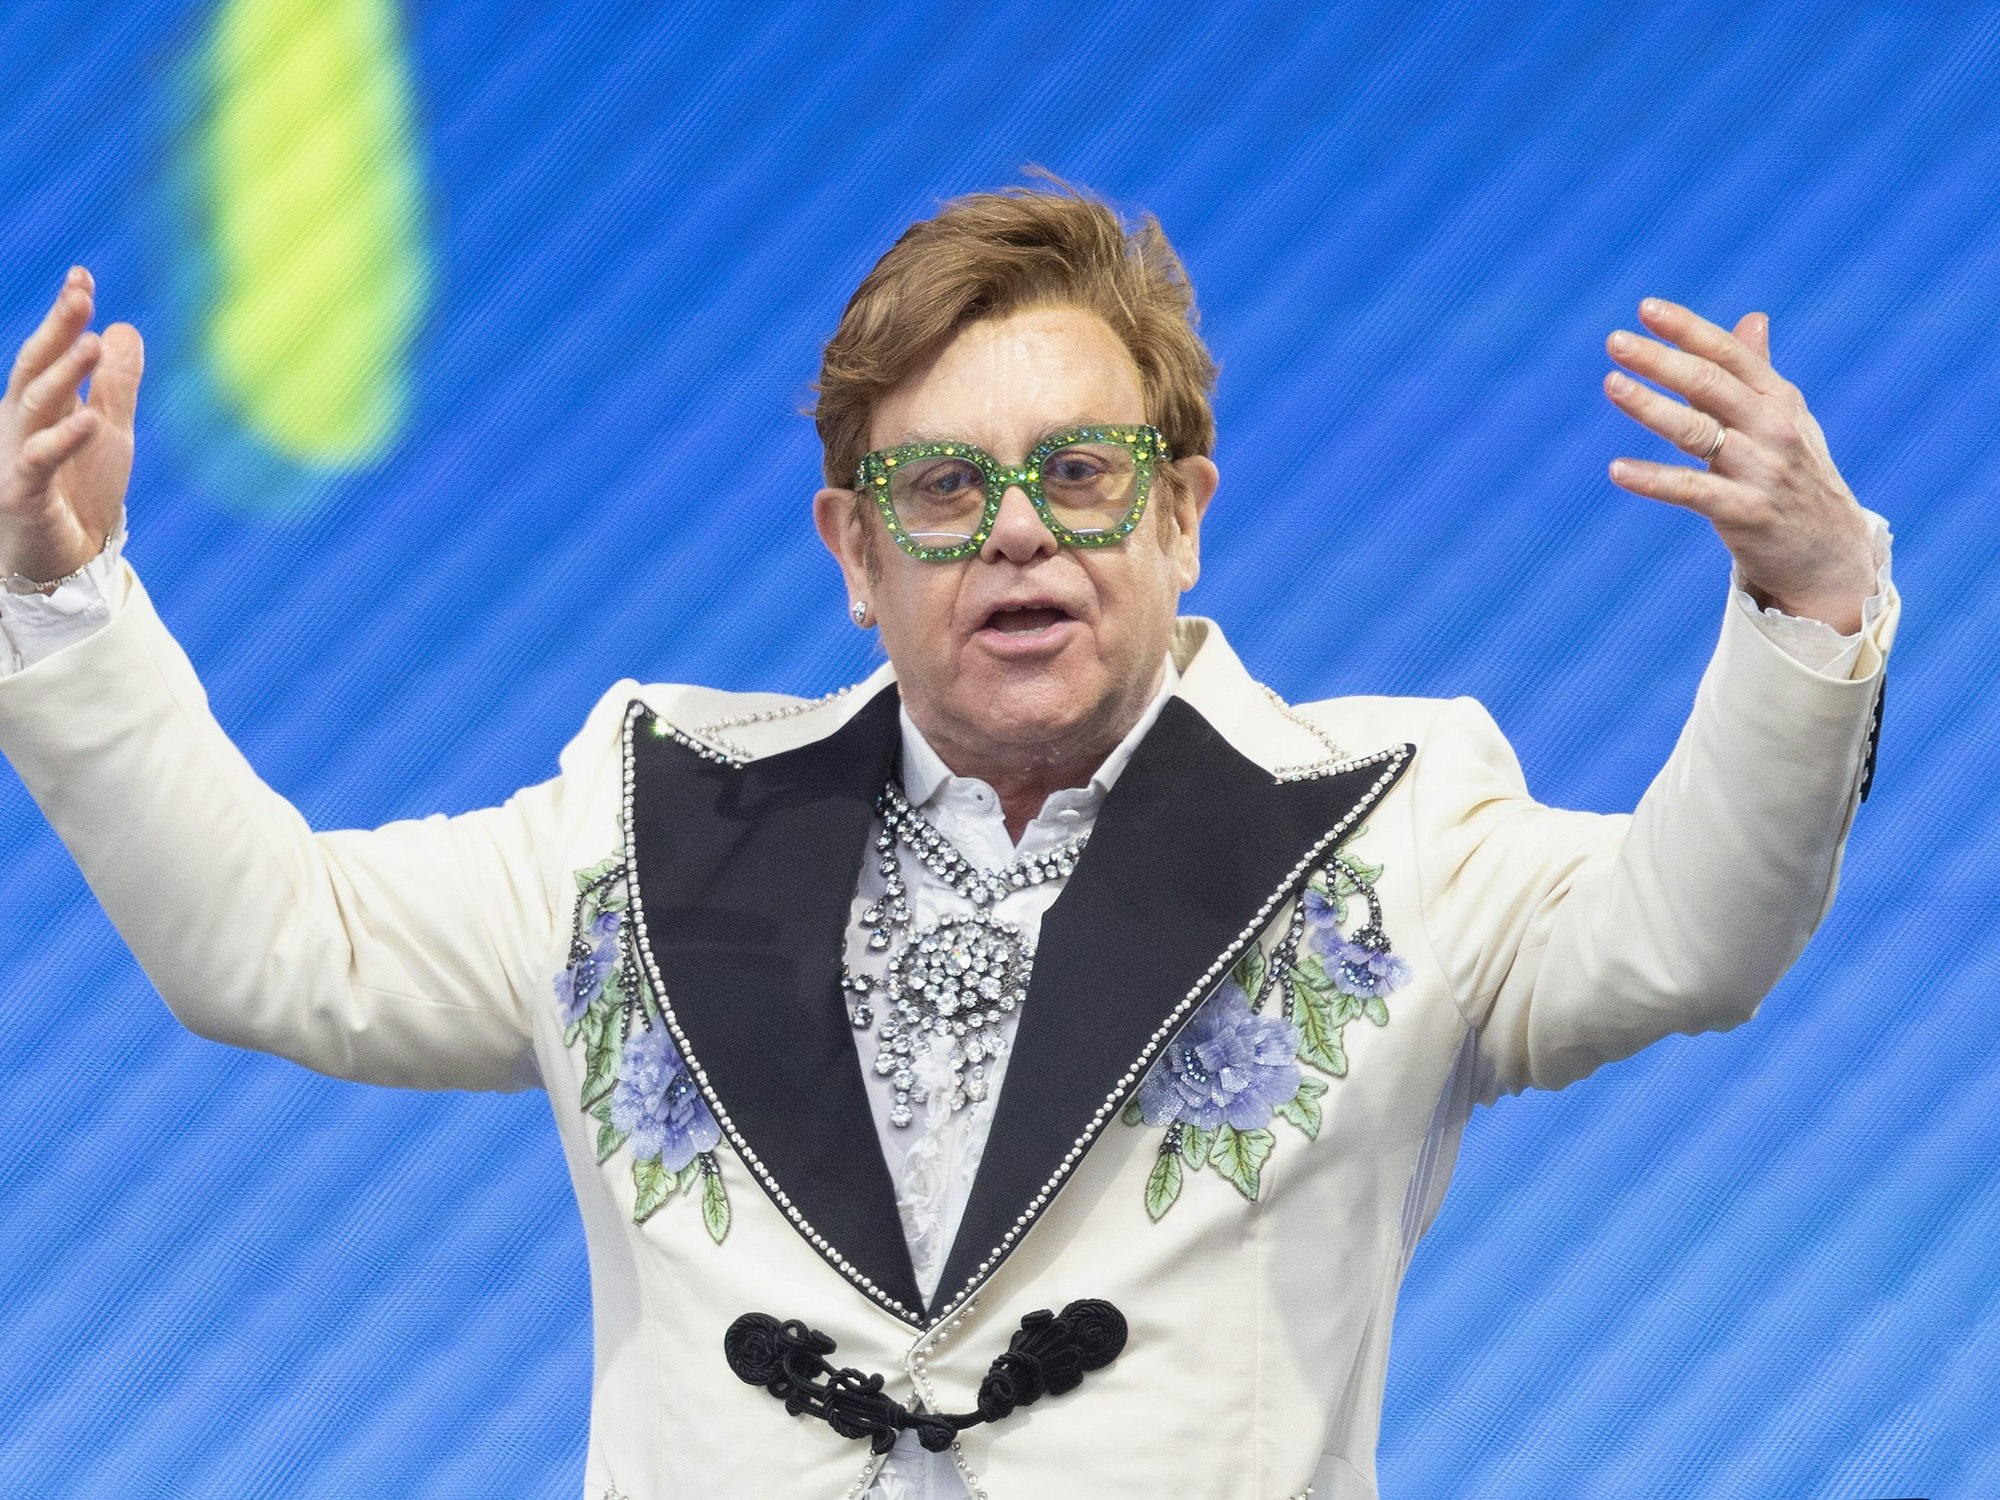 Elton John, Musiker, Komponist und Sänger, tritt live auf der Bühne des BST Hyde Park Festivals auf